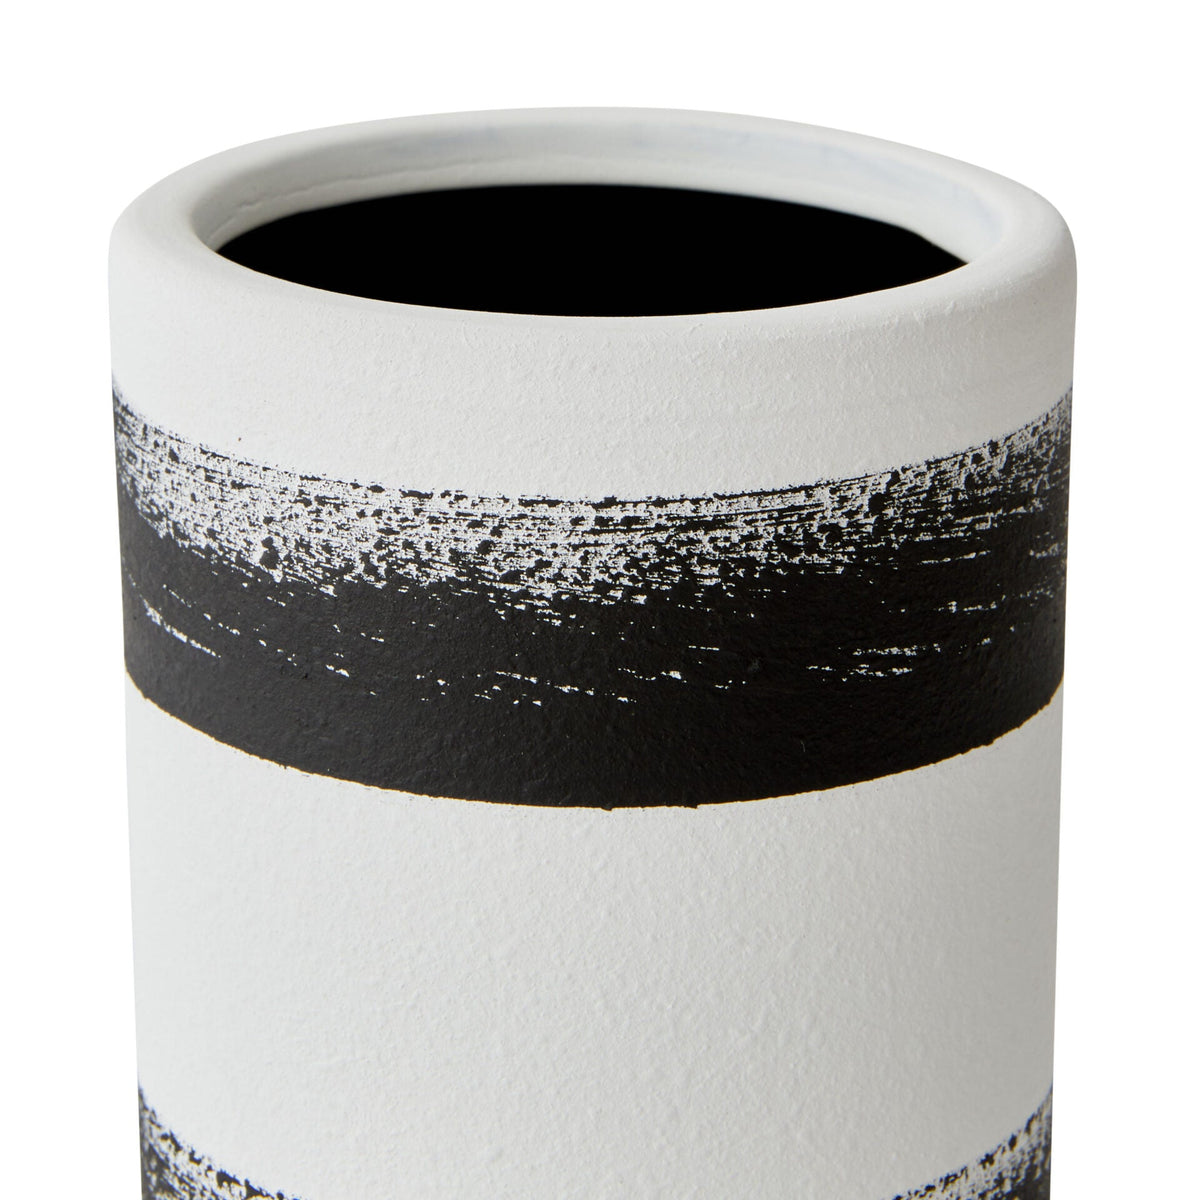 Ceramic Brushed Vase in Black and White - Medium